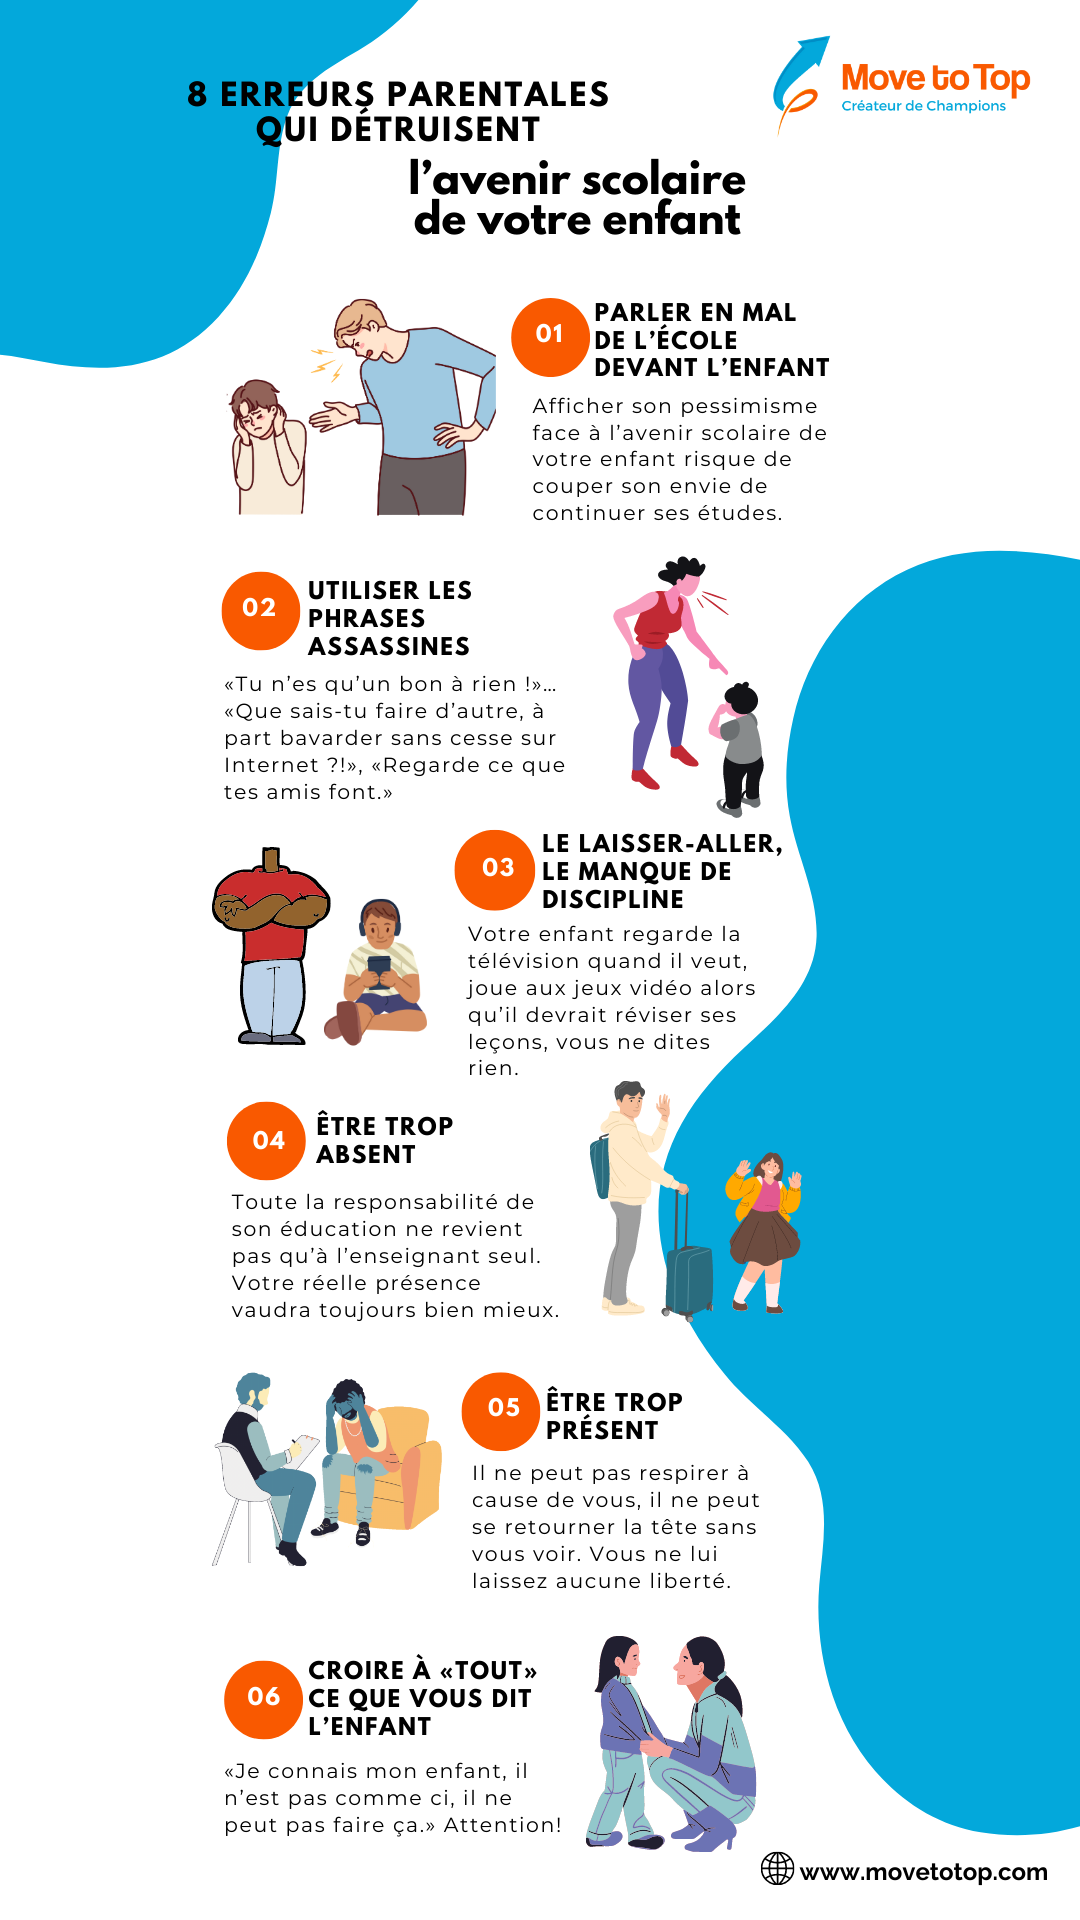 8 erreurs parentales qui detruisent l'avenir scolaire de votre enfant - infographie